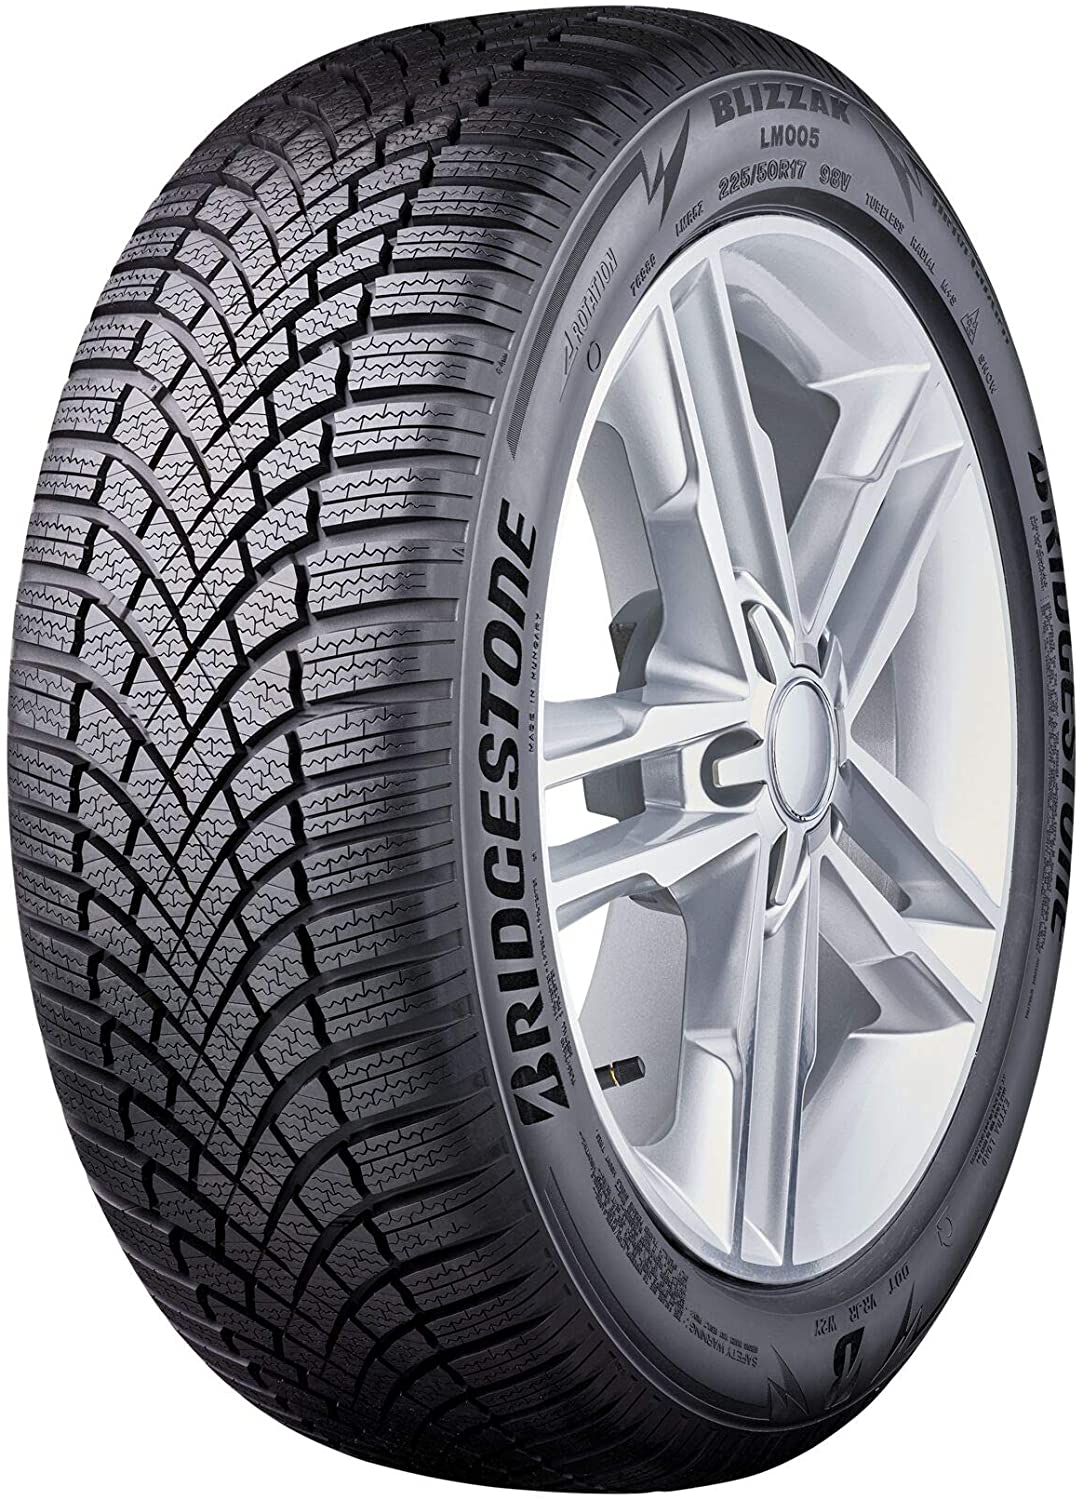 Tyre Reviews - and Tests LM005 Blizzak Bridgestone